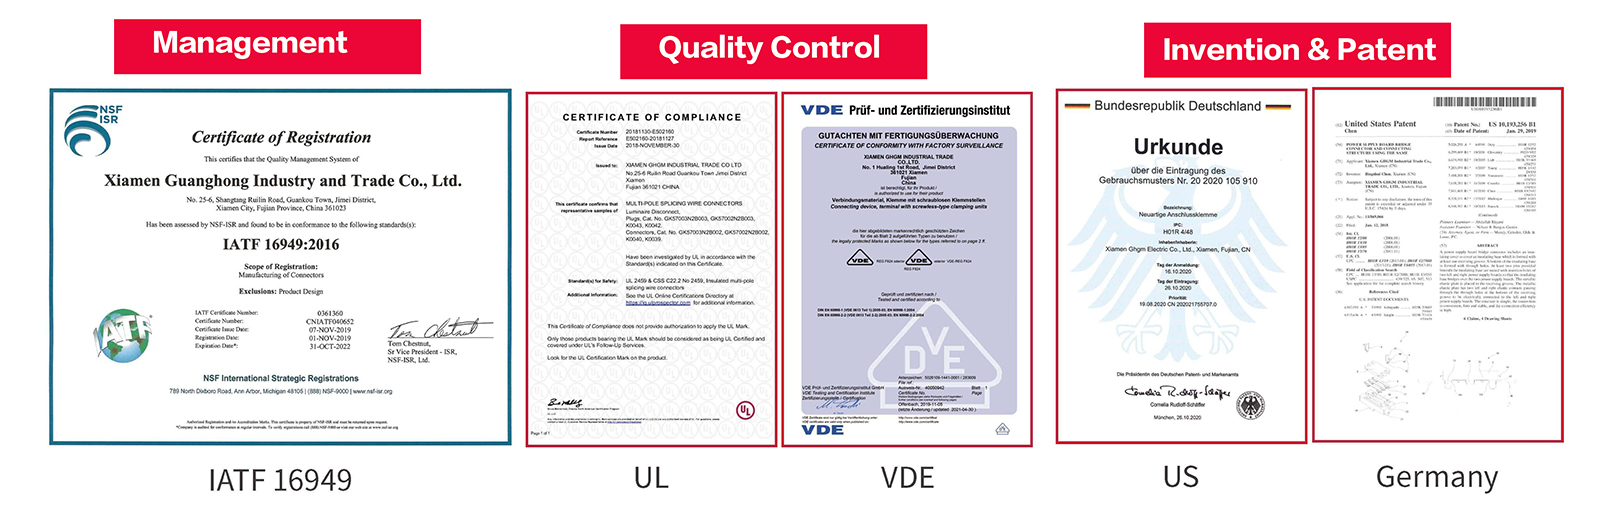 Certificado GHGM, controle de qualidade, invenção e patentes.jpg